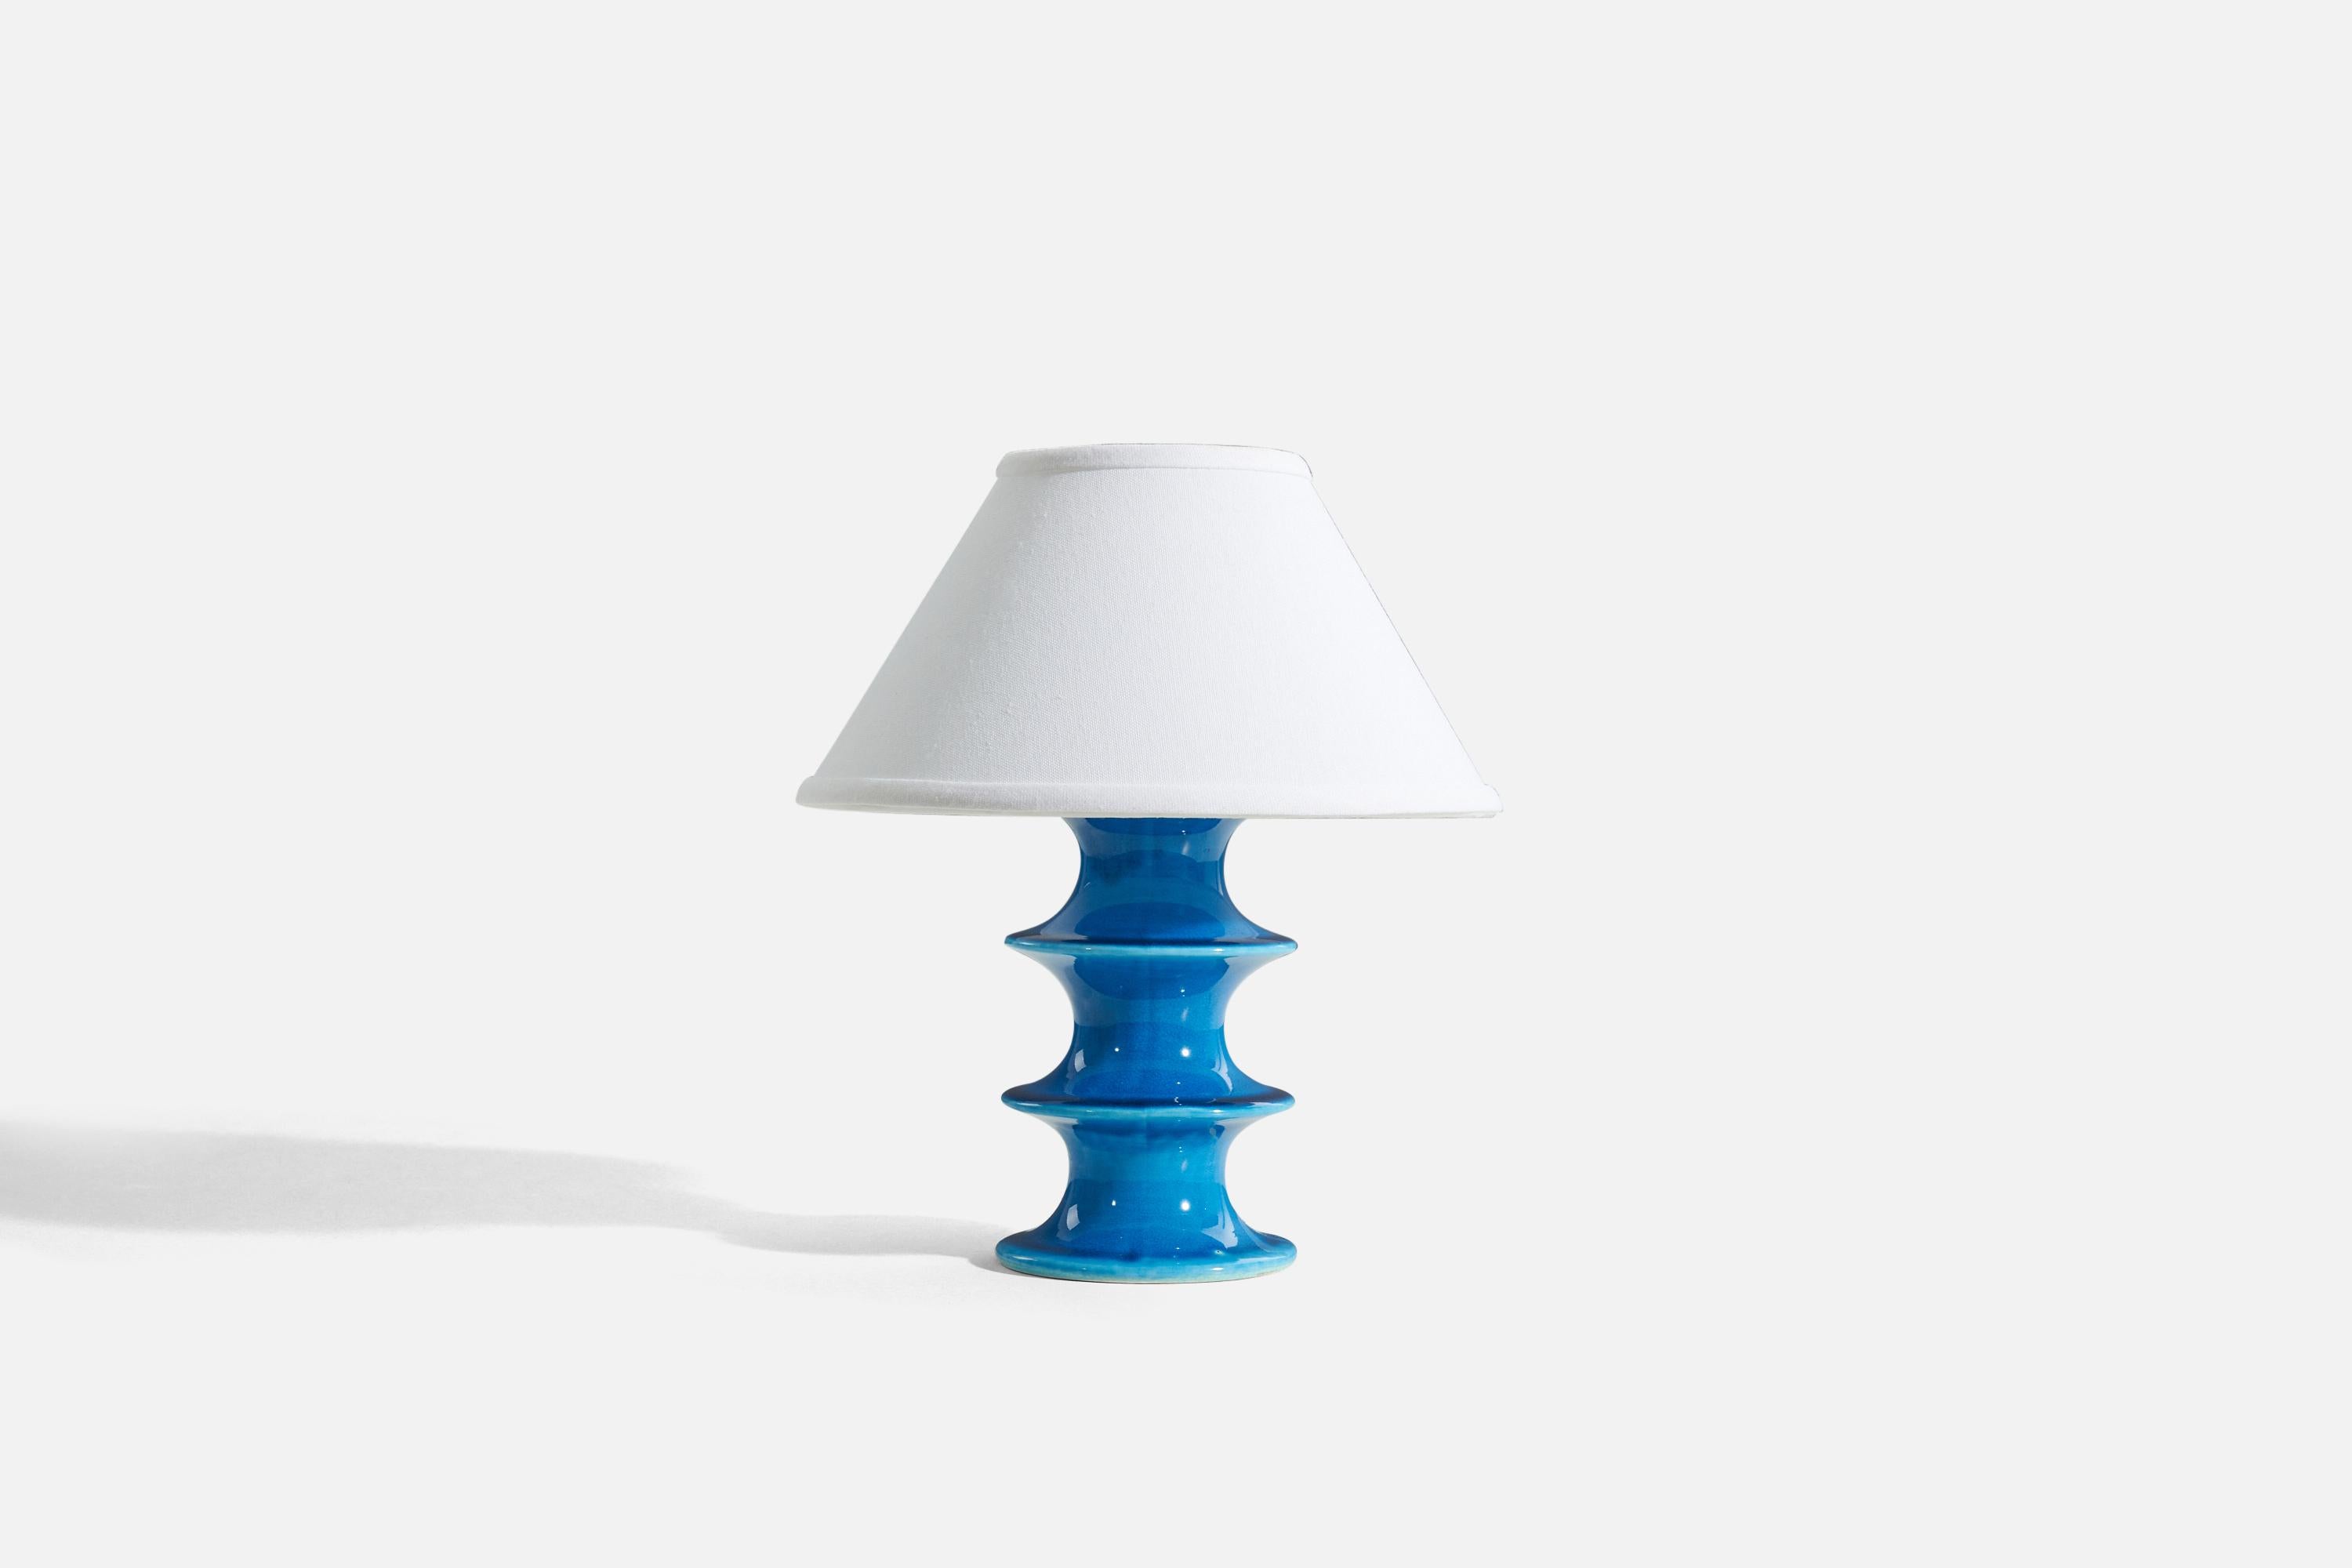 Tischlampe aus blau glasiertem Steingut, entworfen von Inger Persson, hergestellt von Rörstrand, Schweden, 1960er Jahre. Markiert.

Verkauft ohne Lampenschirme.
Abmessungen der Lampe (Zoll) : 8.4375 x 4,375 x 4,375 (H x B x T)
Abmessungen des